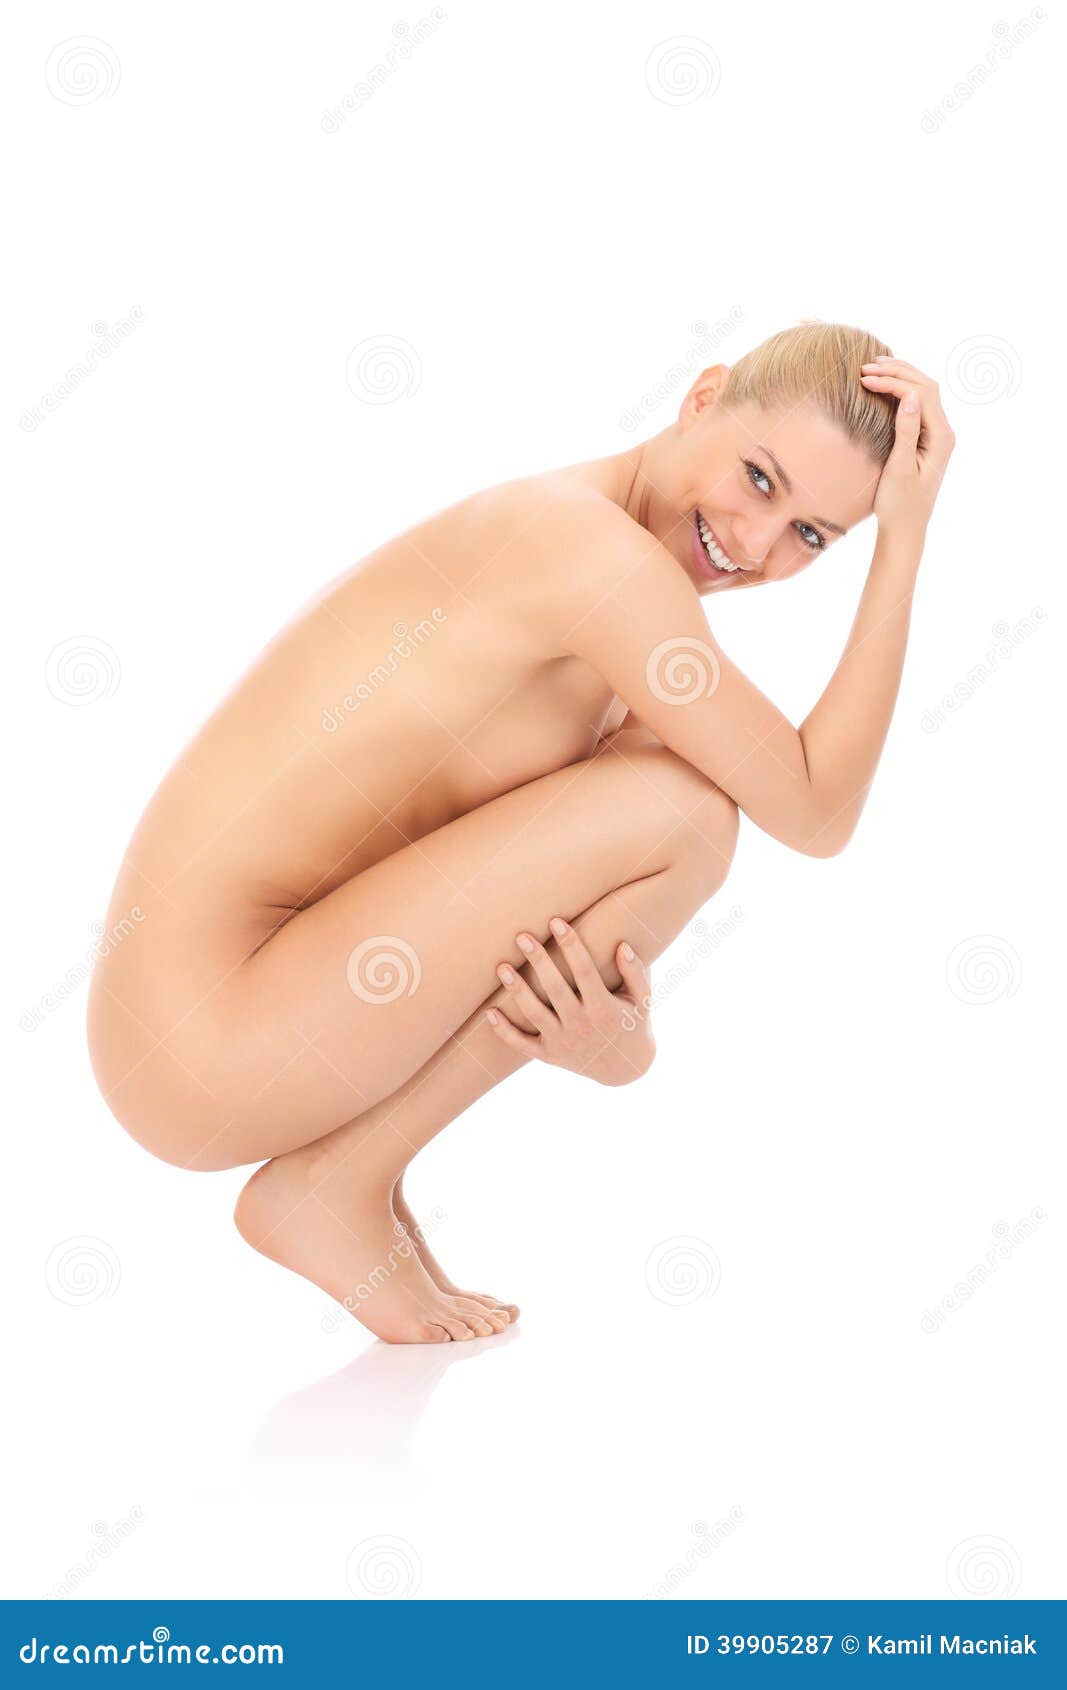 Nude squat